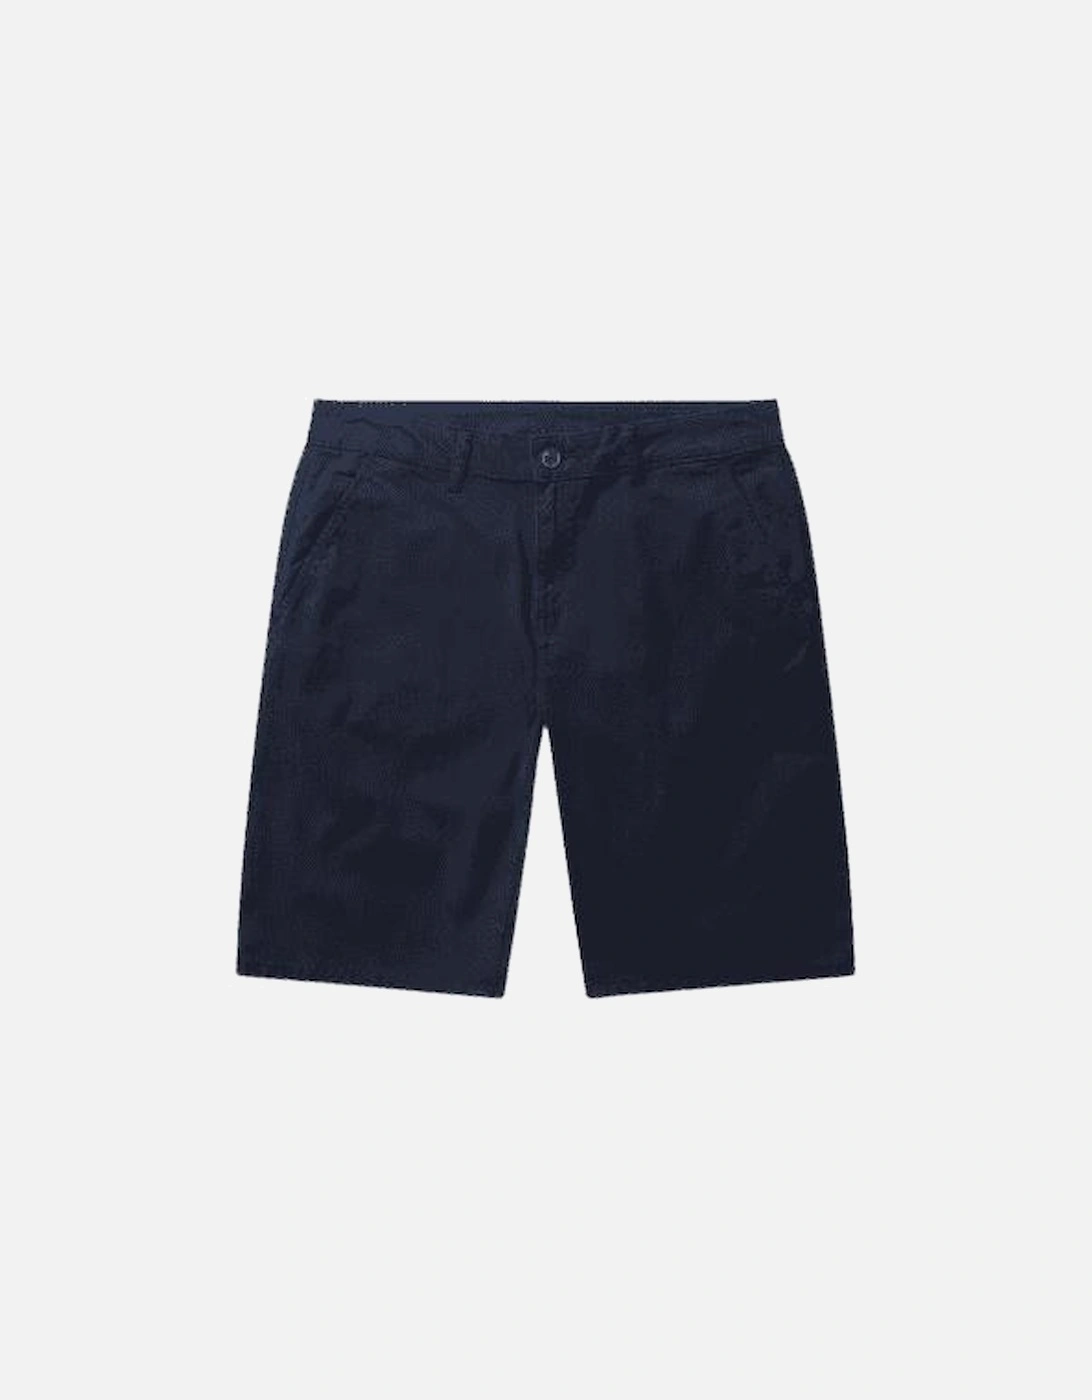 Men's Gradini Navy Chino Shorts